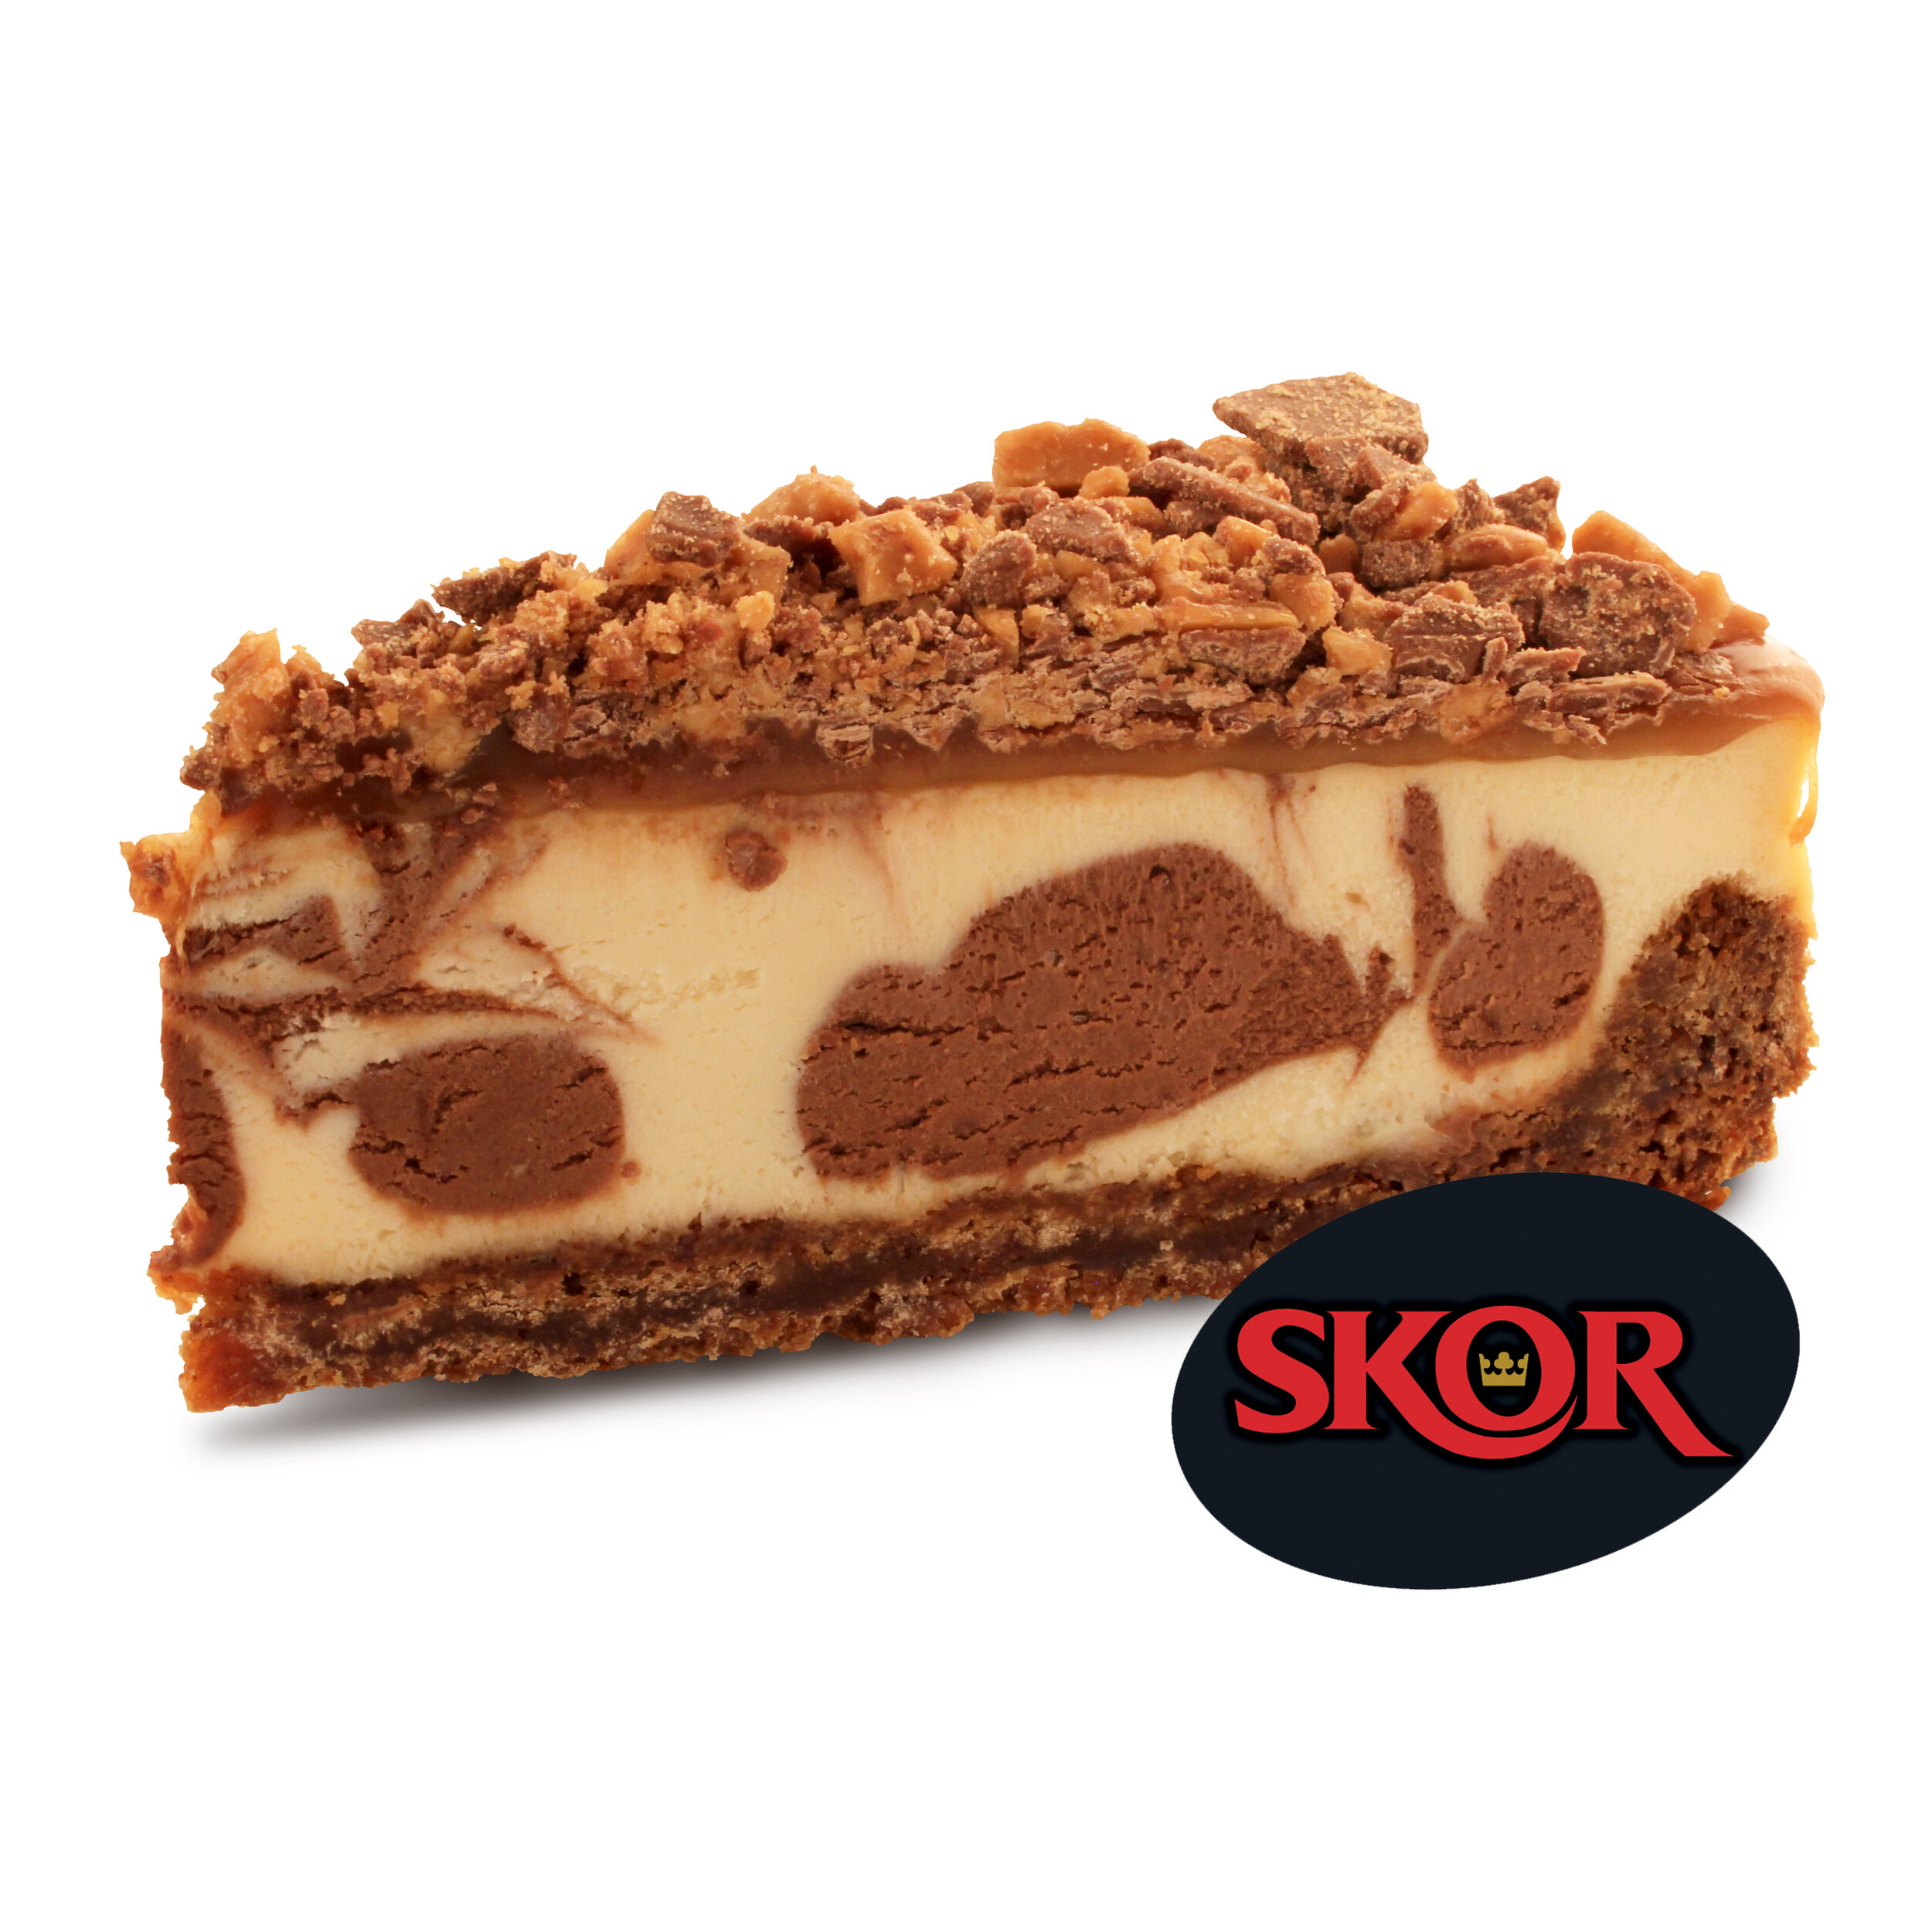 SKOR CC slice branded.jpg